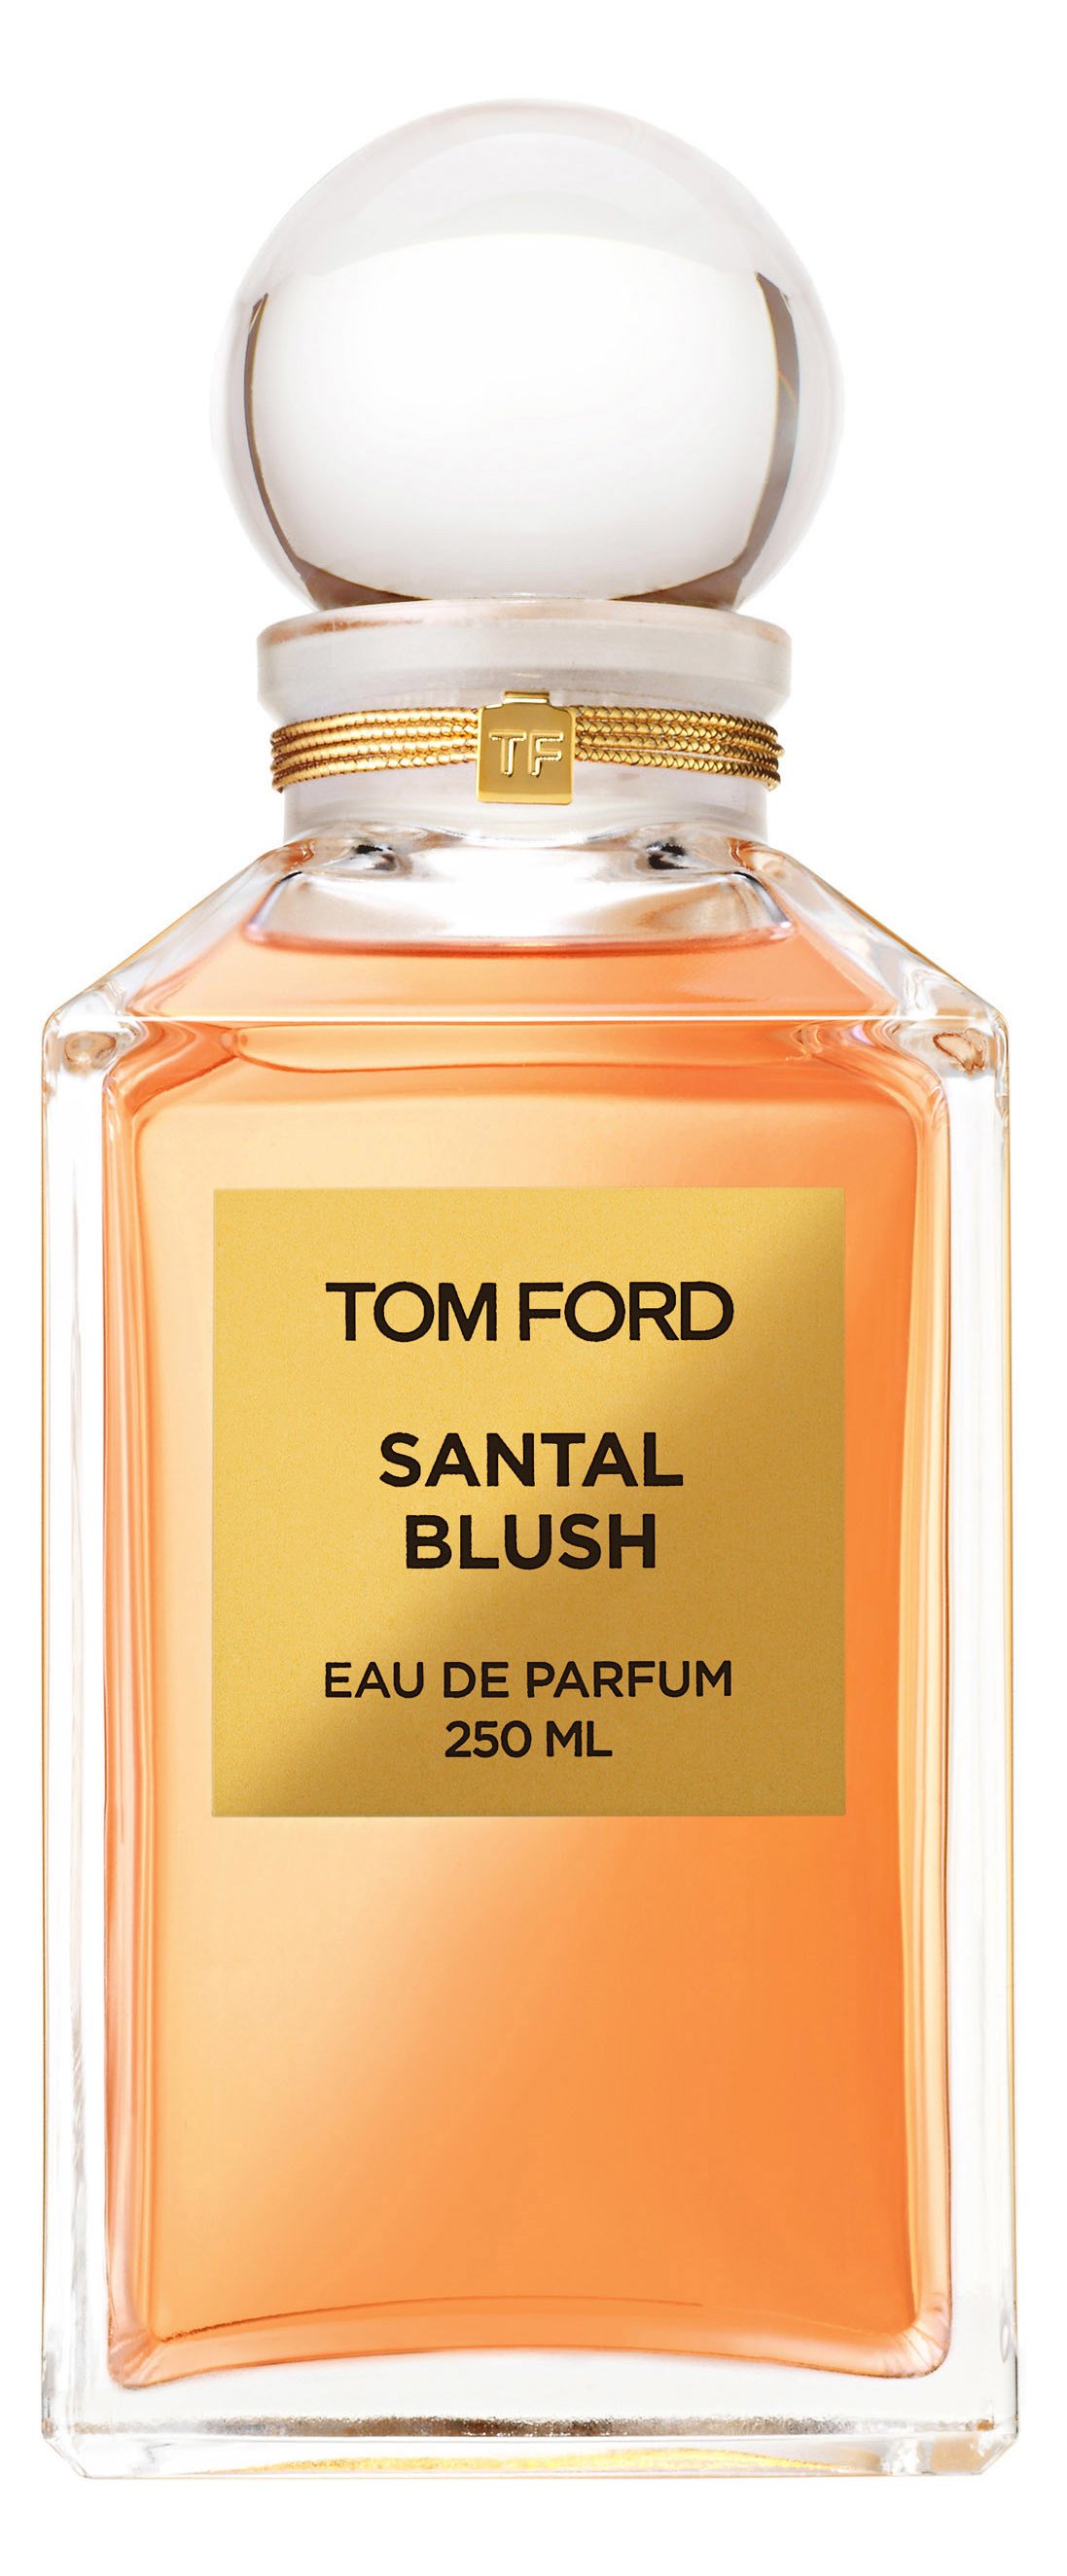 Santal Blush von Tom Ford » Meinungen & Duftbeschreibung